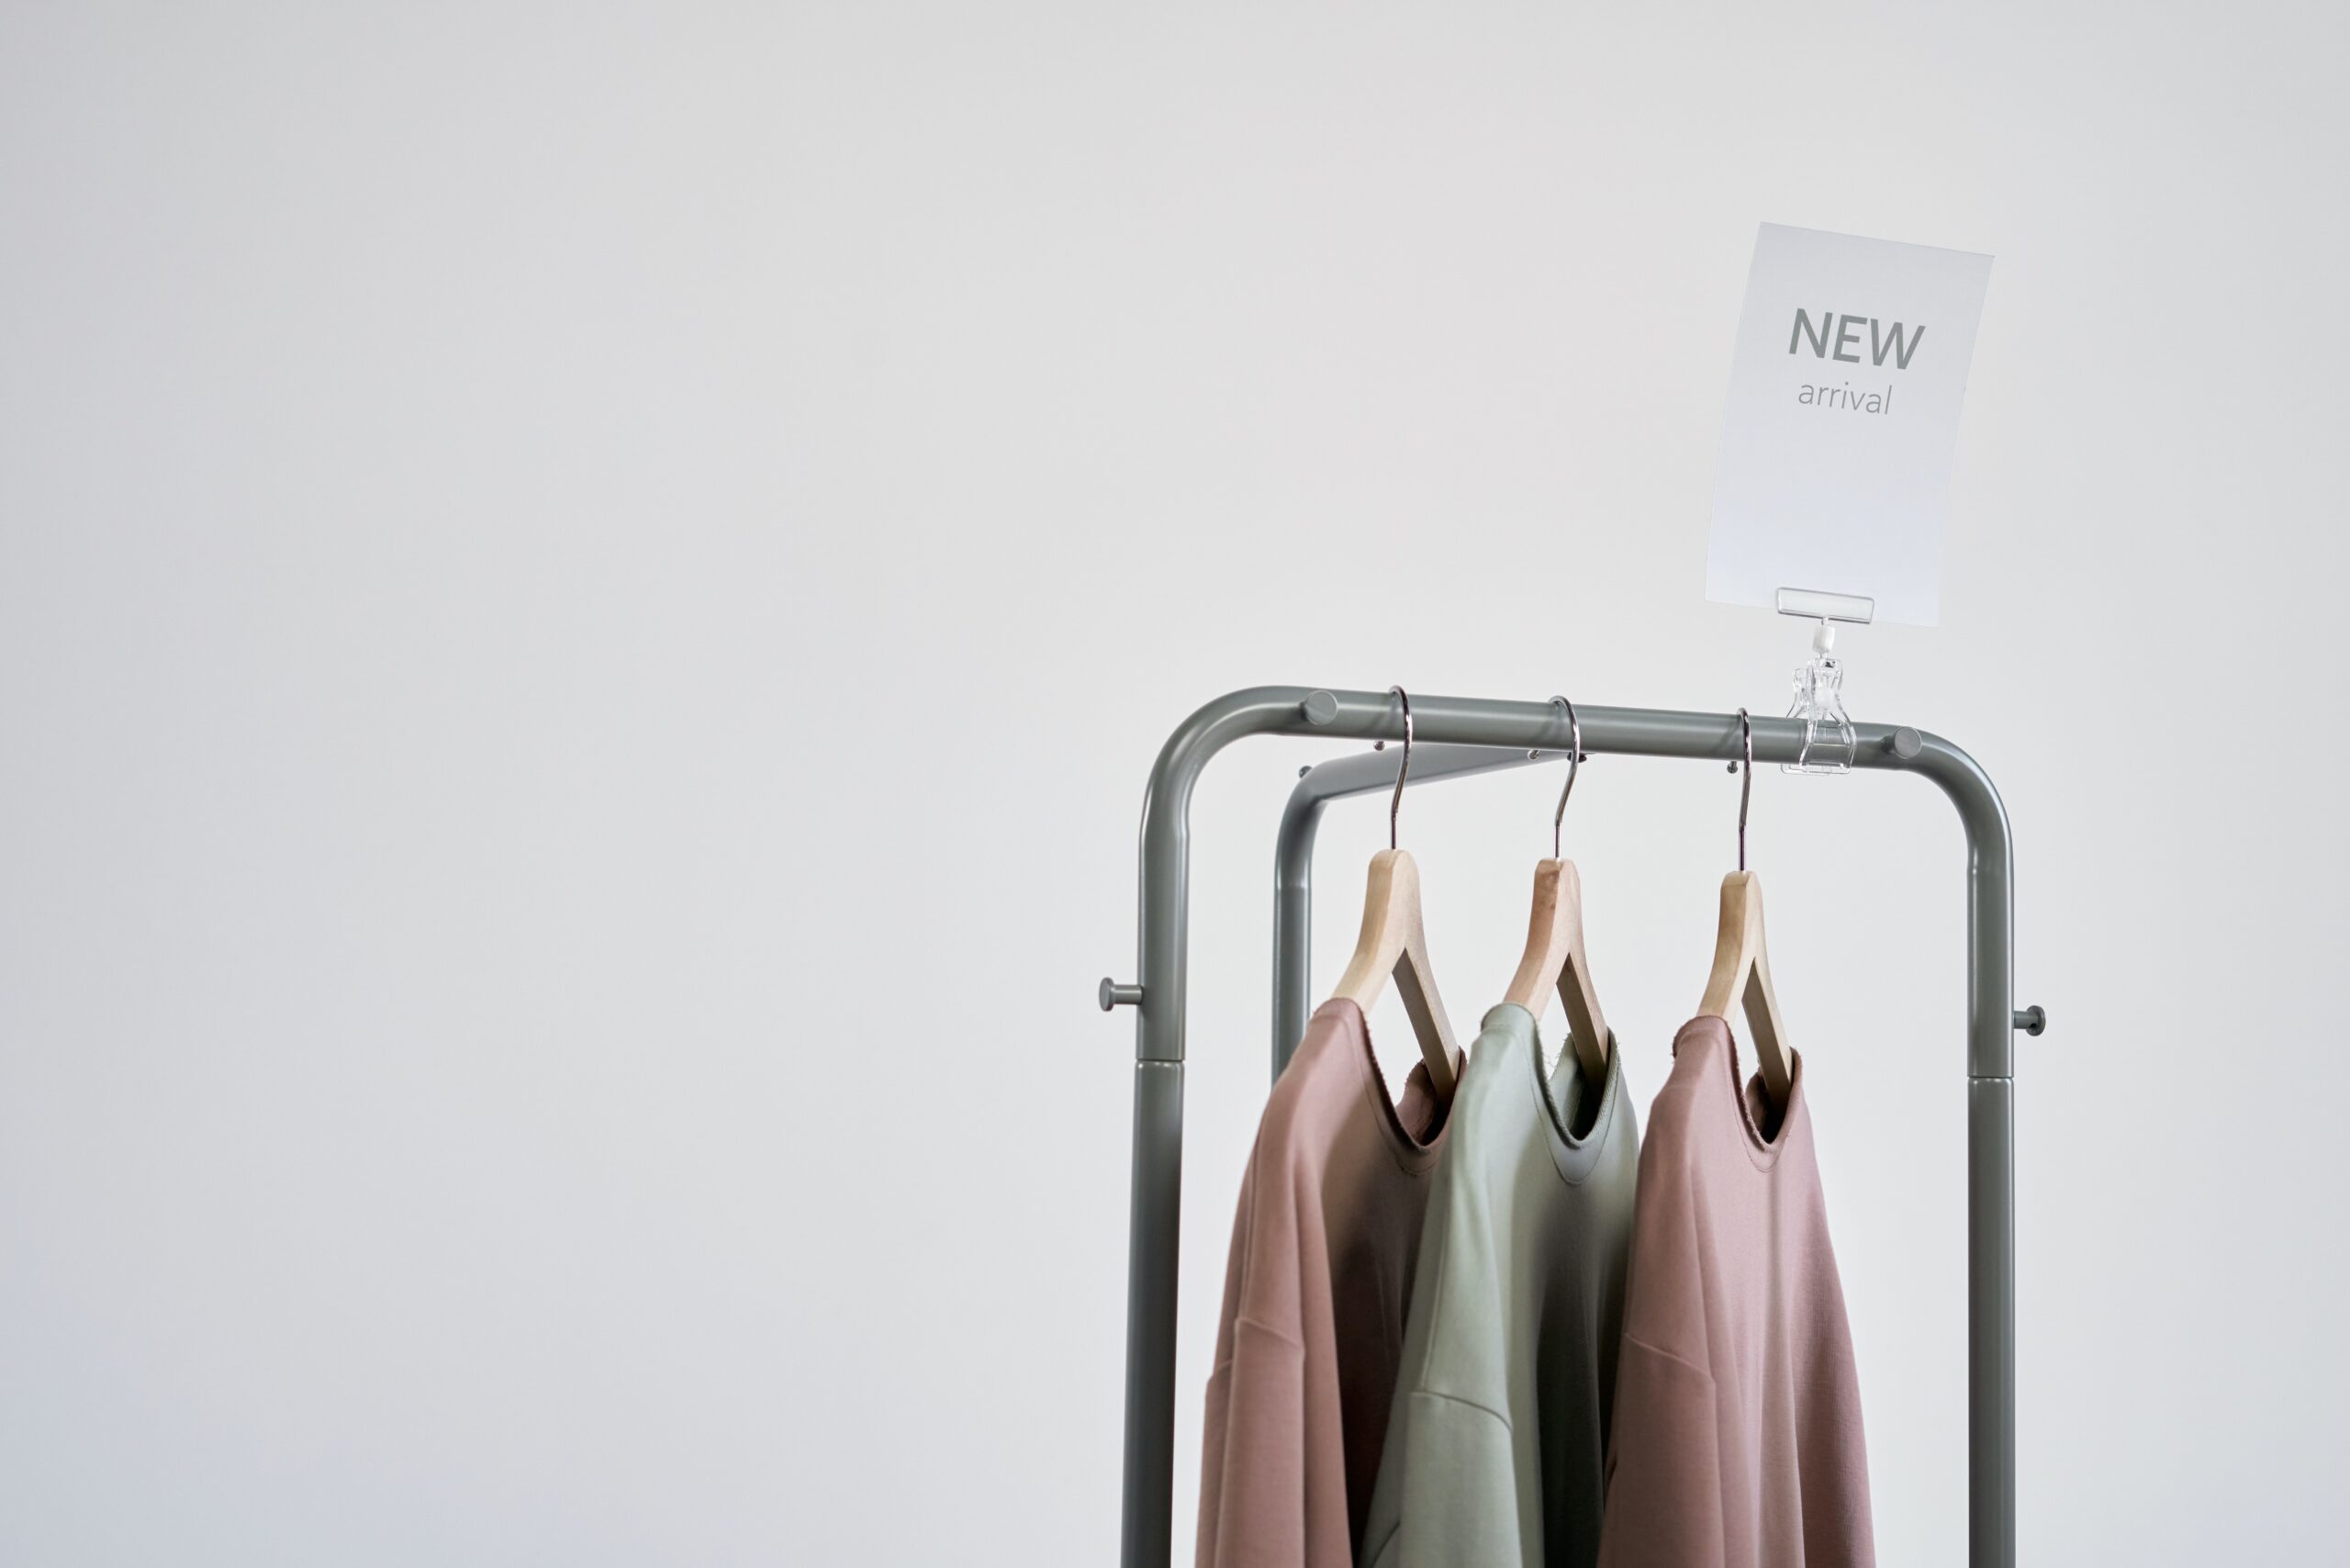 Softshell firmowy - na czym polega wyjątkowość i uniwersalność tego typu odzieży